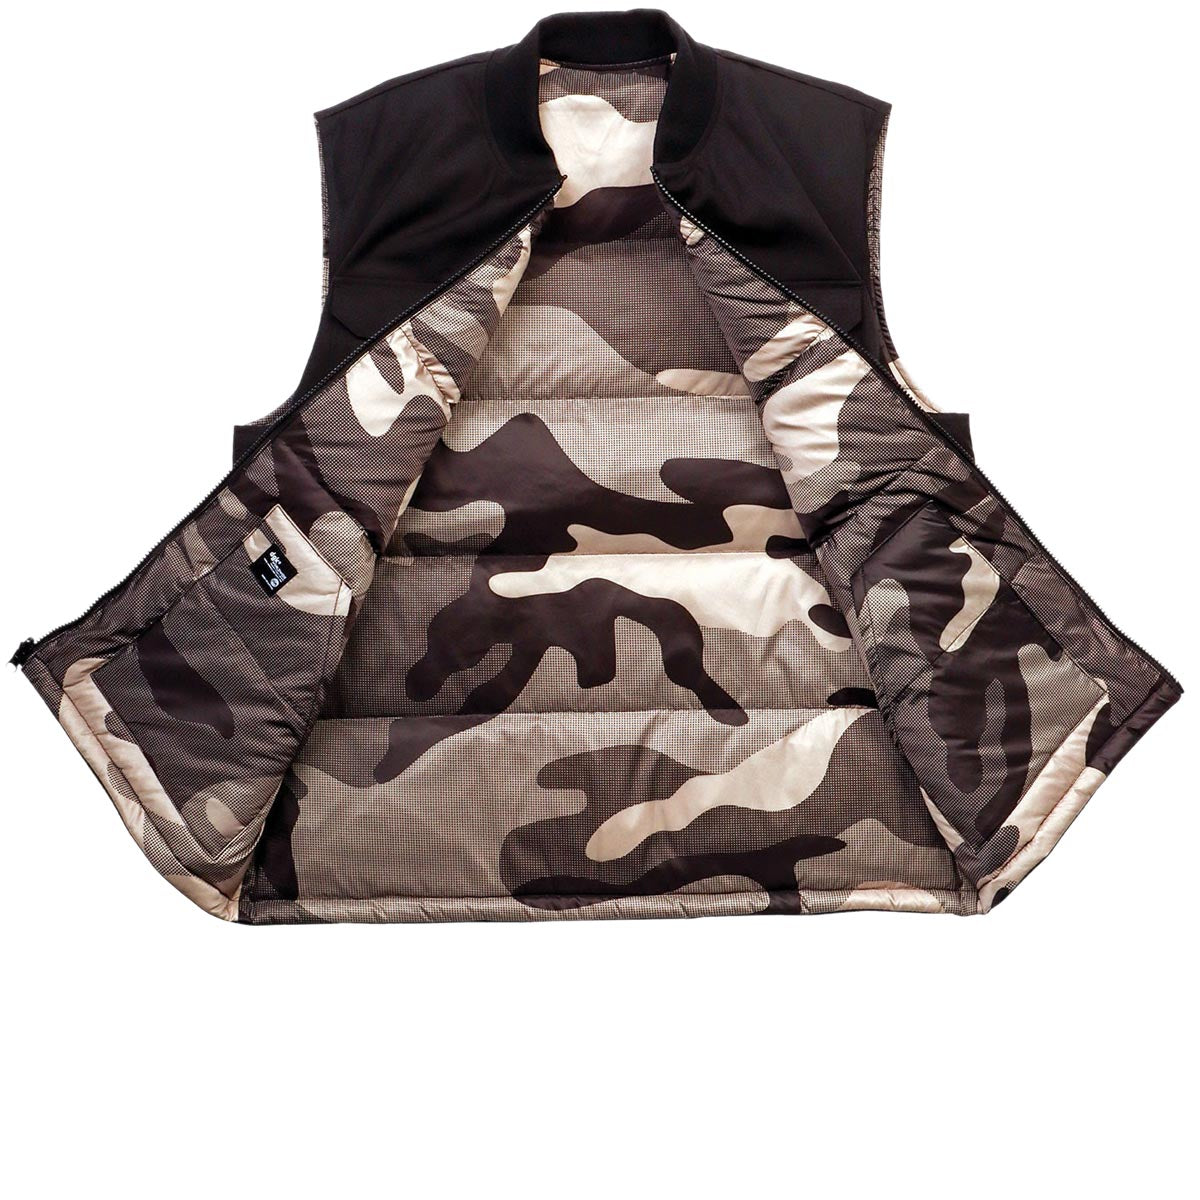 DGK Contra Reversible Vest Jacket - Black Camo image 2